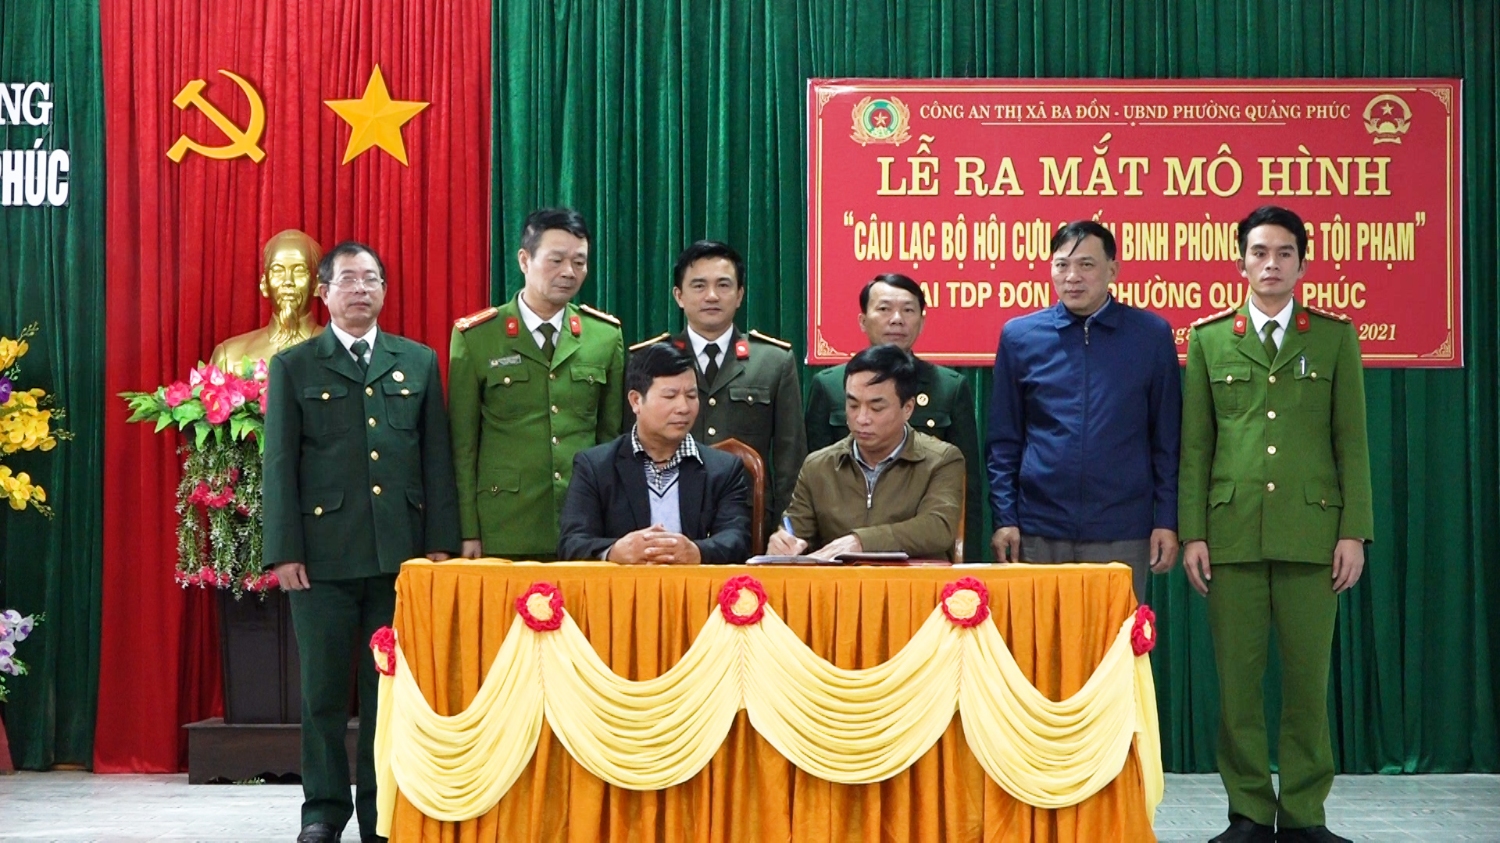 ký cam kết mô hình Câu lạc bộ Hội Cựu chiến binh phòng chống tội phạm tại TDP Đơn Sa, phường Quảng Phúc